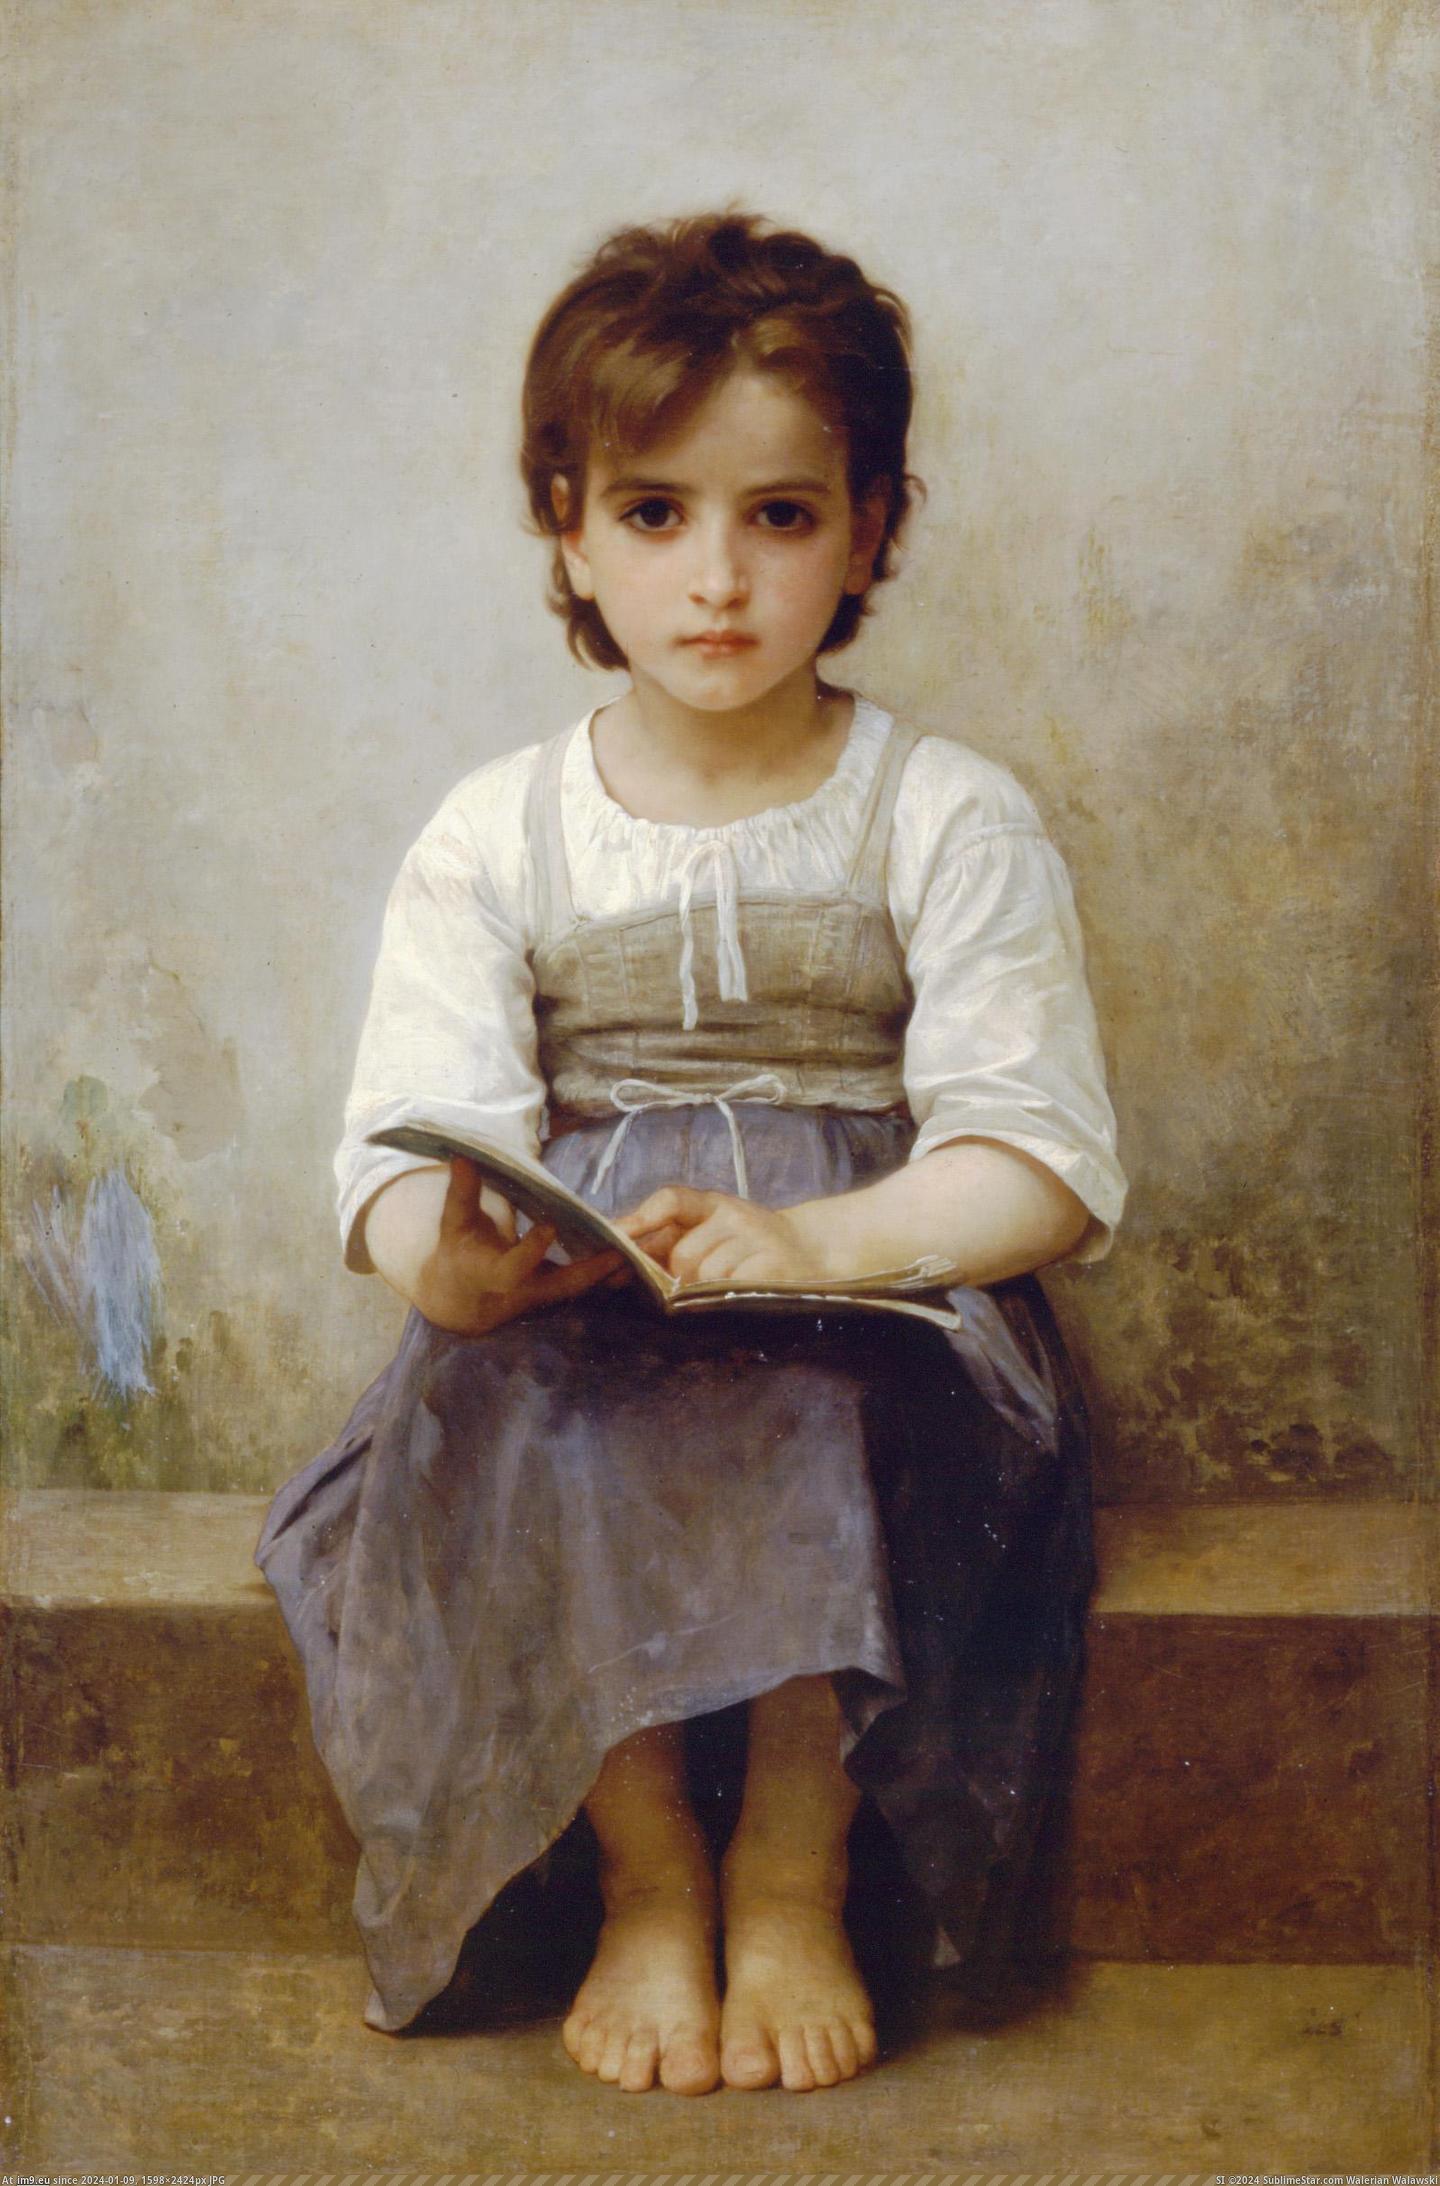 (1884) La Leton Difficile - William Adolphe Bouguereau (in William Adolphe Bouguereau paintings (1825-1905))